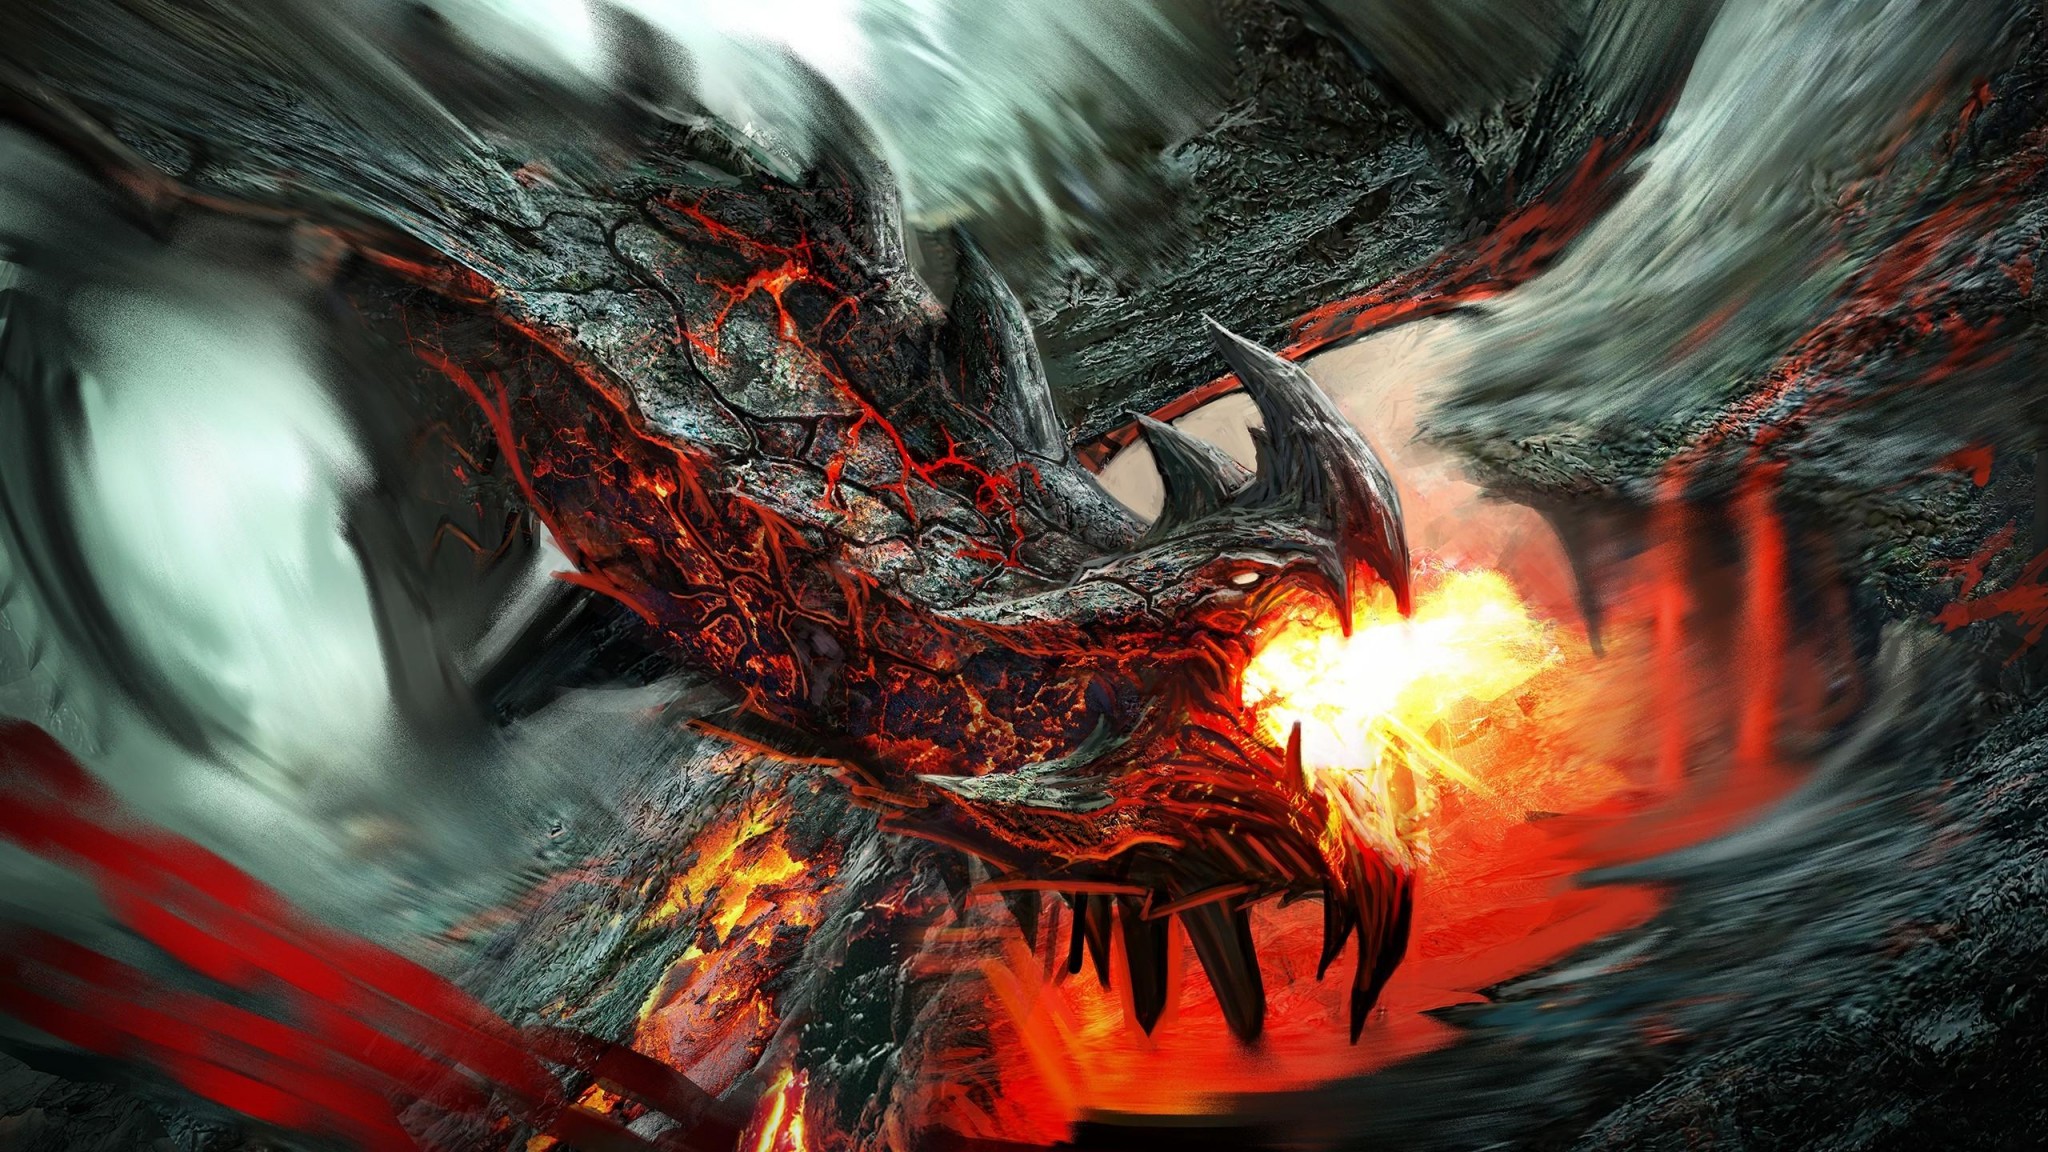 drago wallpaper hd,gioco di avventura e azione,drago,cg artwork,demone,personaggio fittizio